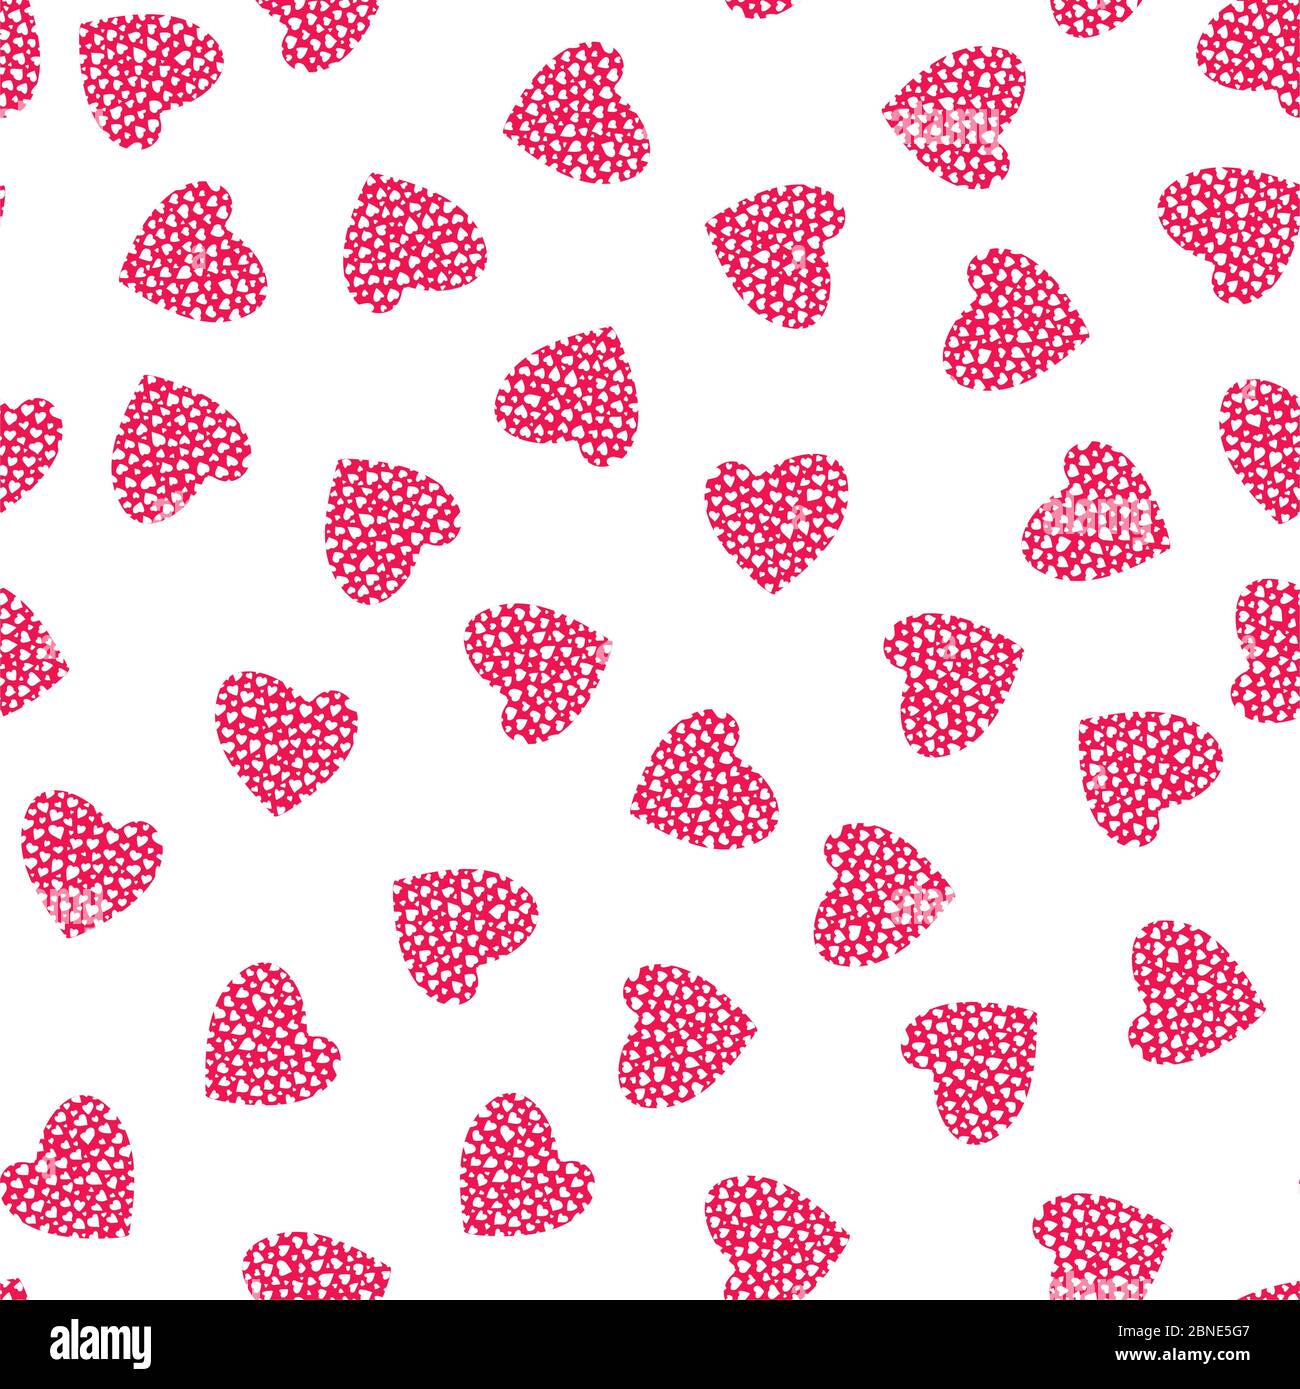 Herz nahtloses Muster. Rosa und weiß romantischen Hintergrund. Verpackung Textur für Valentinstag Geschenk oder Grußkarte Design. Vektor eps8 Abbildung Stock Vektor